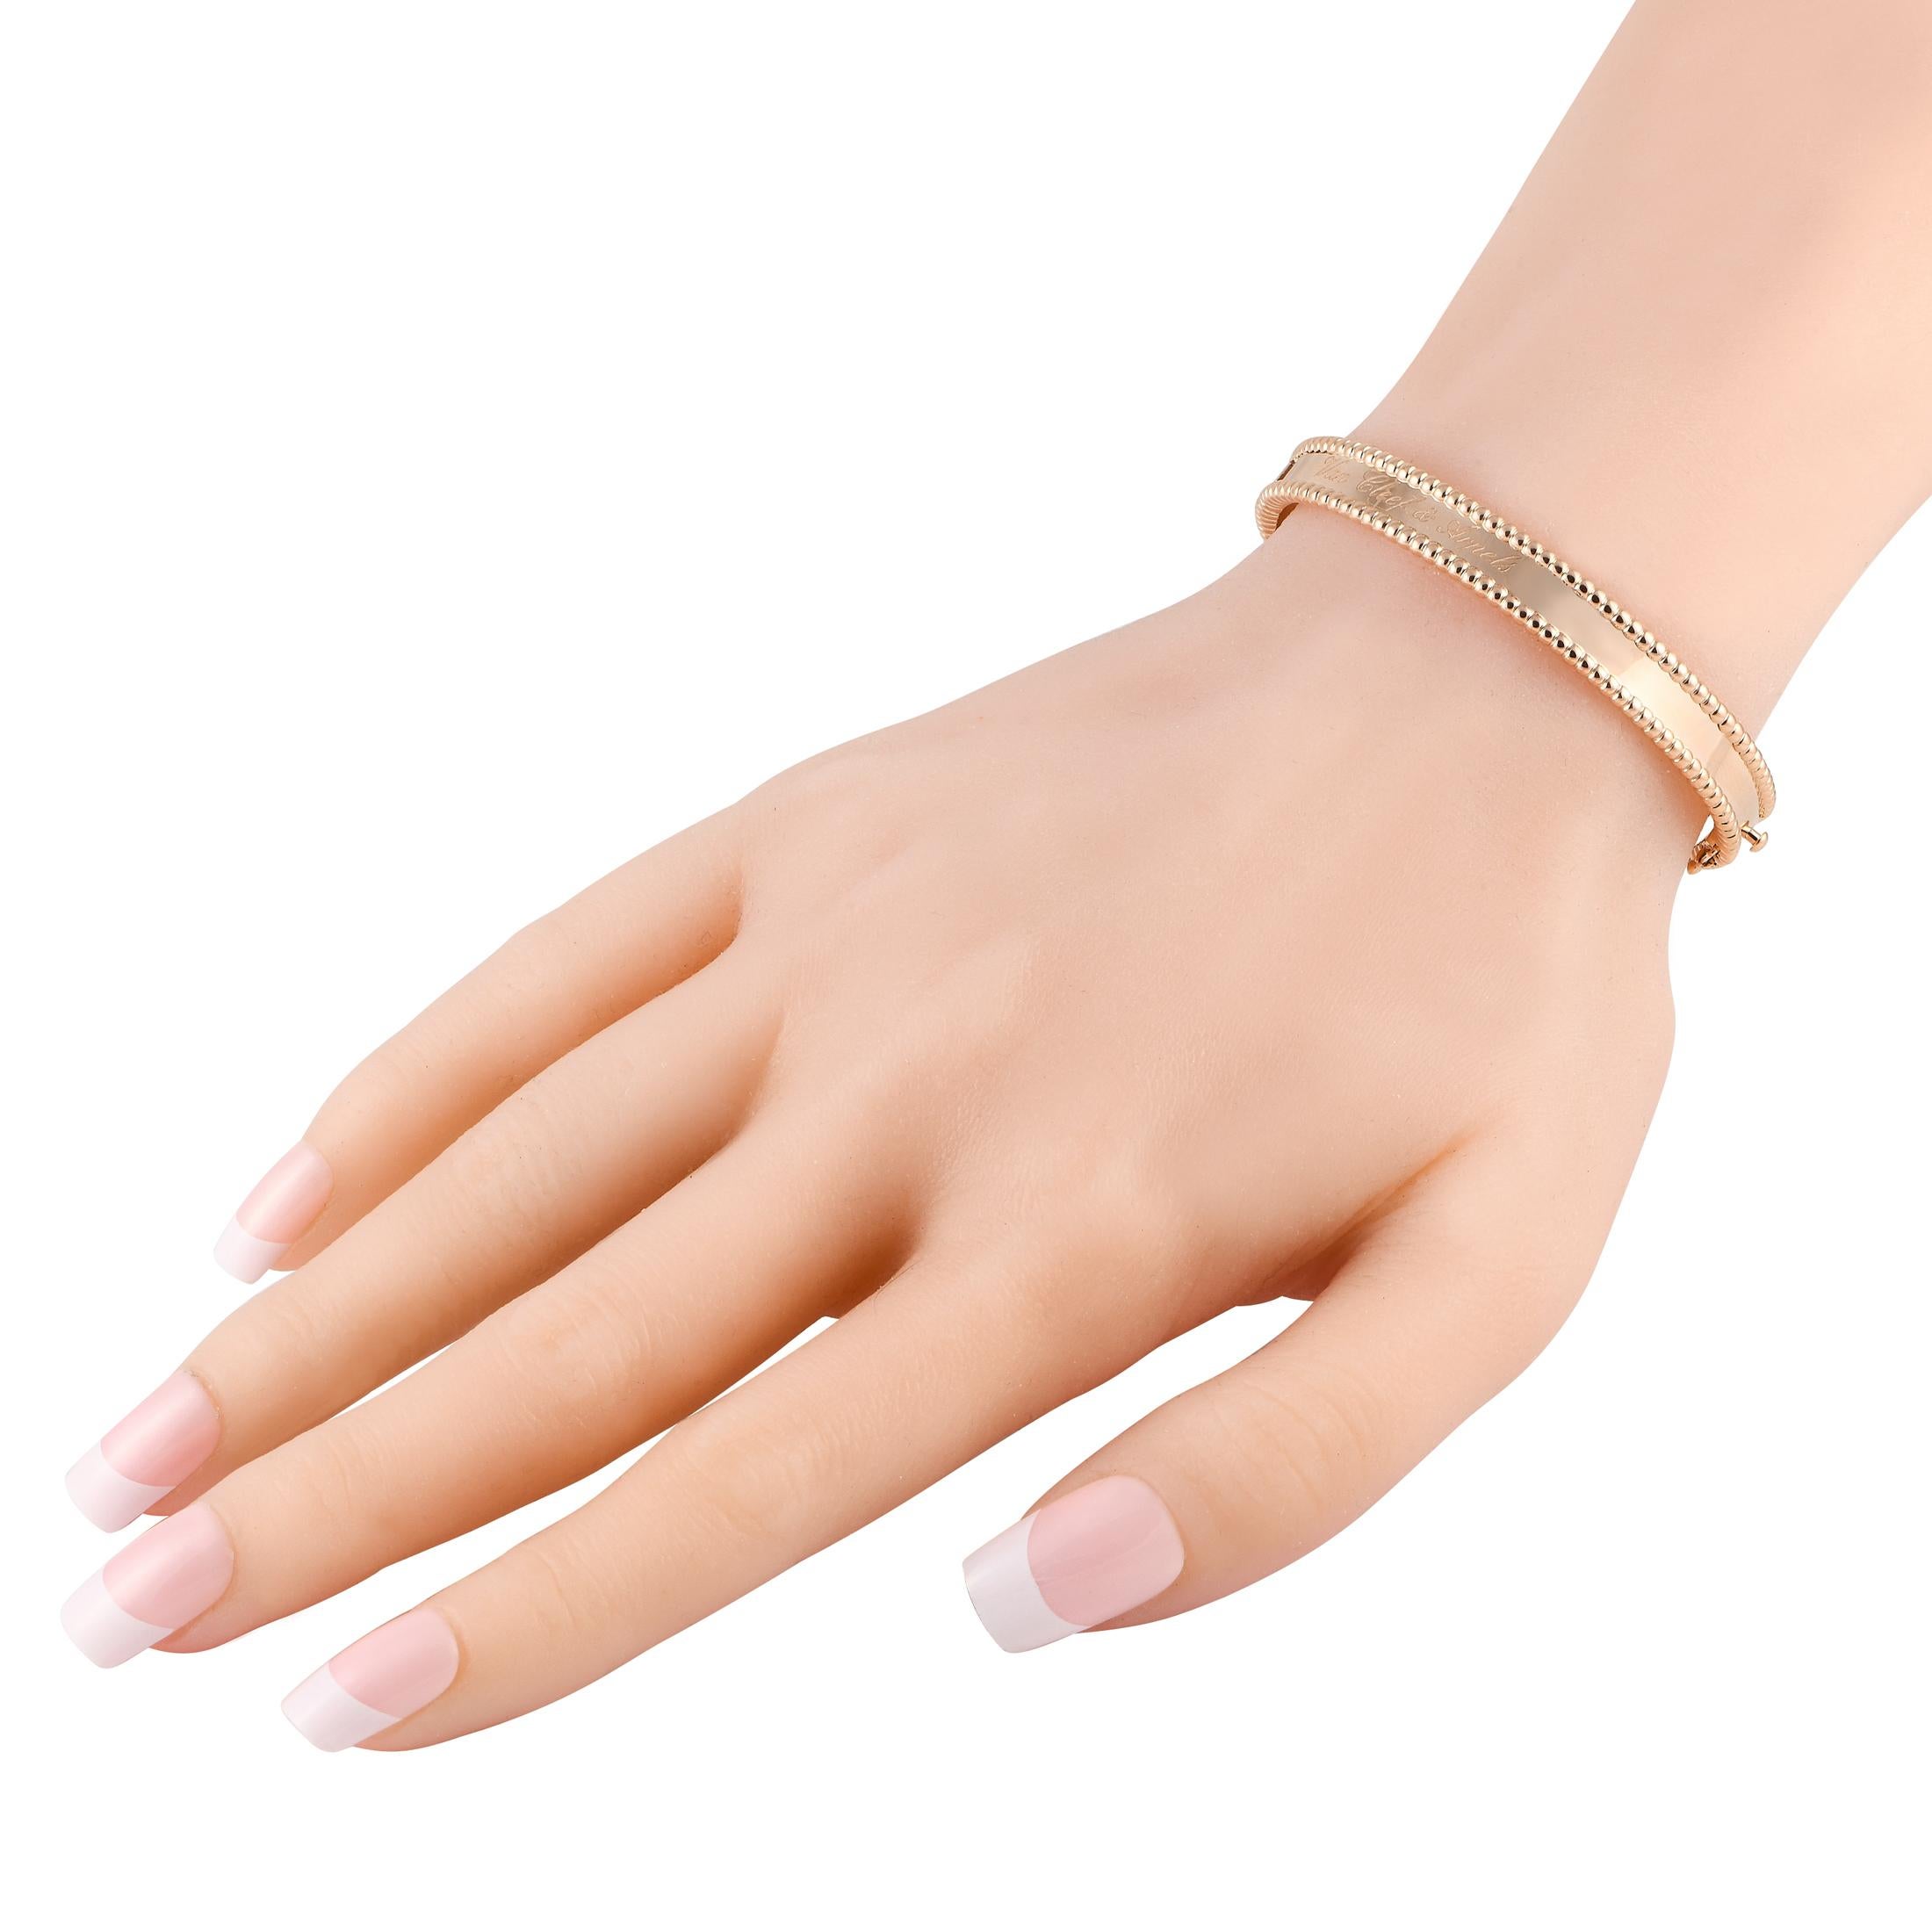 Sobre, sophistiqué et incroyablement élégant, ce bracelet en or rose 18 carats Van Cleef & Arpels Perlee apportera la touche finale à n'importe quel ensemble. Il mesure 6,75 cm de long et est orné de perles métalliques emblématiques de la